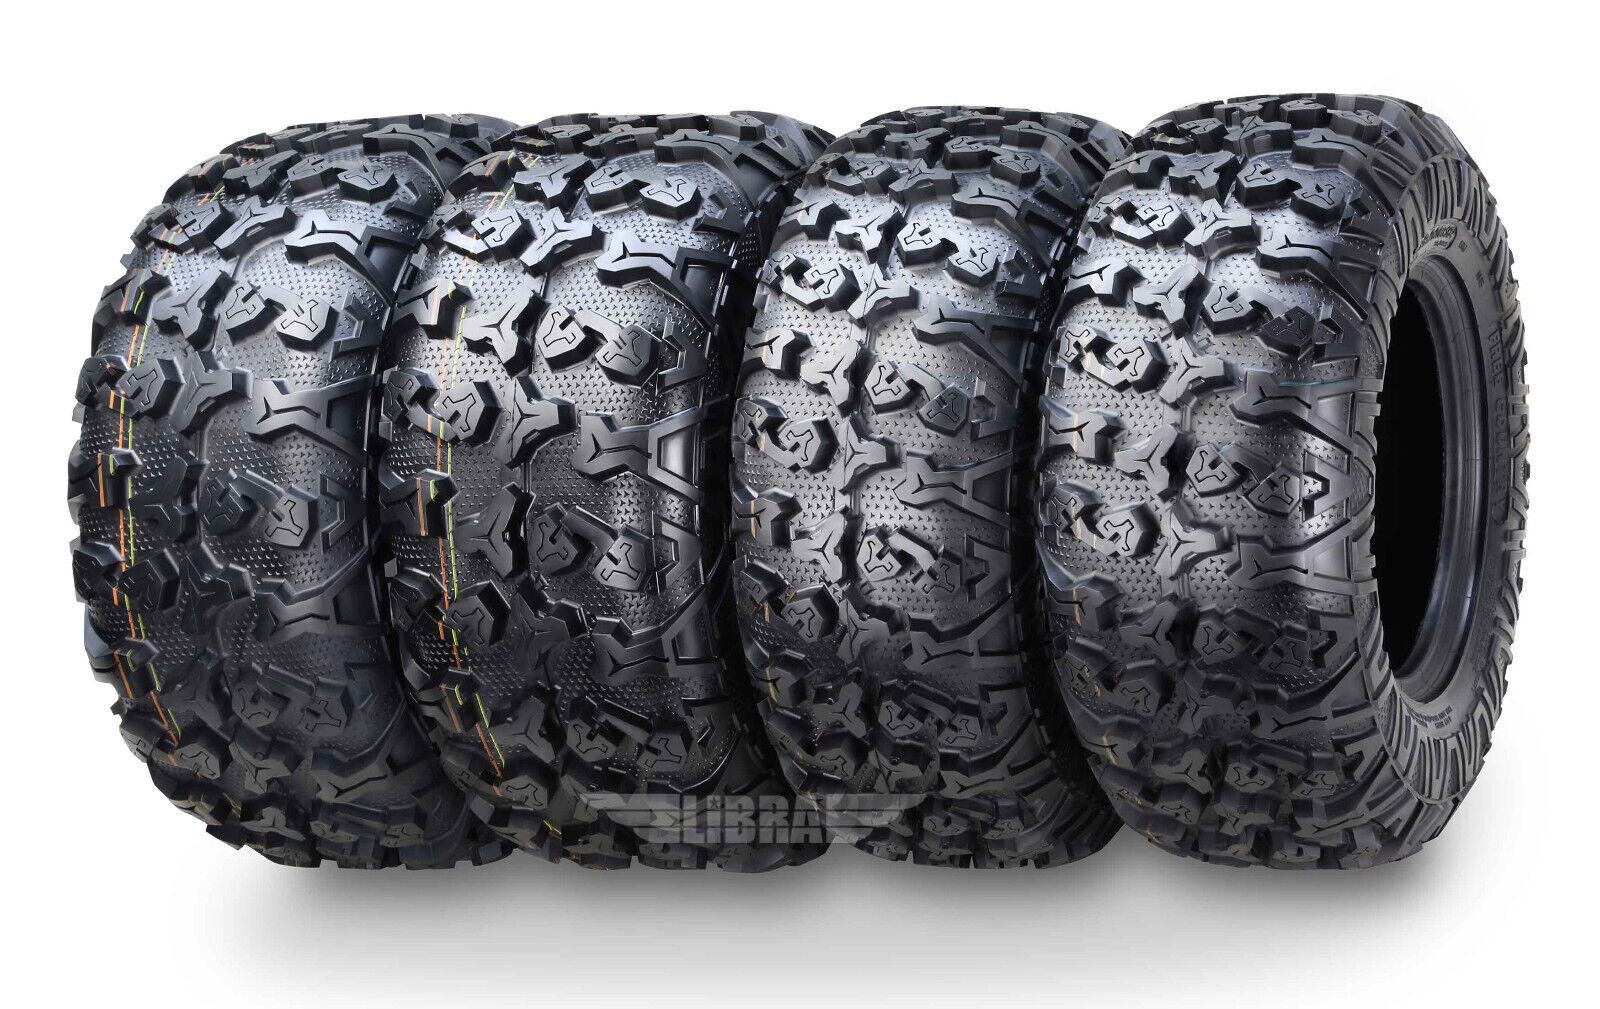 Premium ATV Tires 25x8-12 25x10-12 15 Arctic Cat XR500 550 700/17,20 PROWLER 500